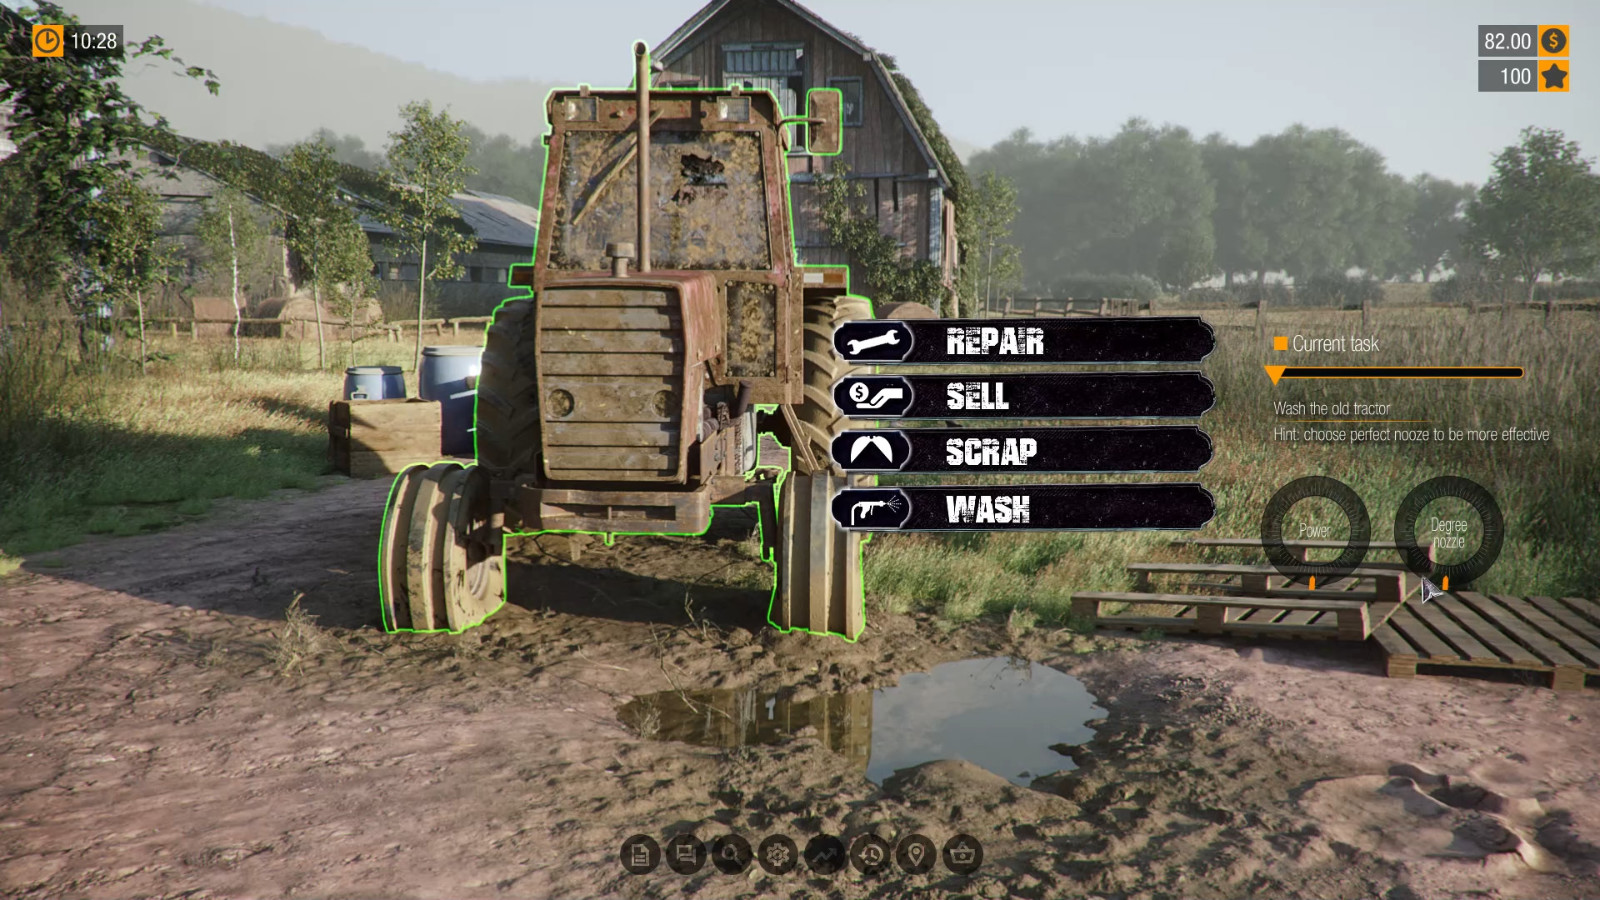 模拟建造游戏《农场整建师》上架Steam 支持中文